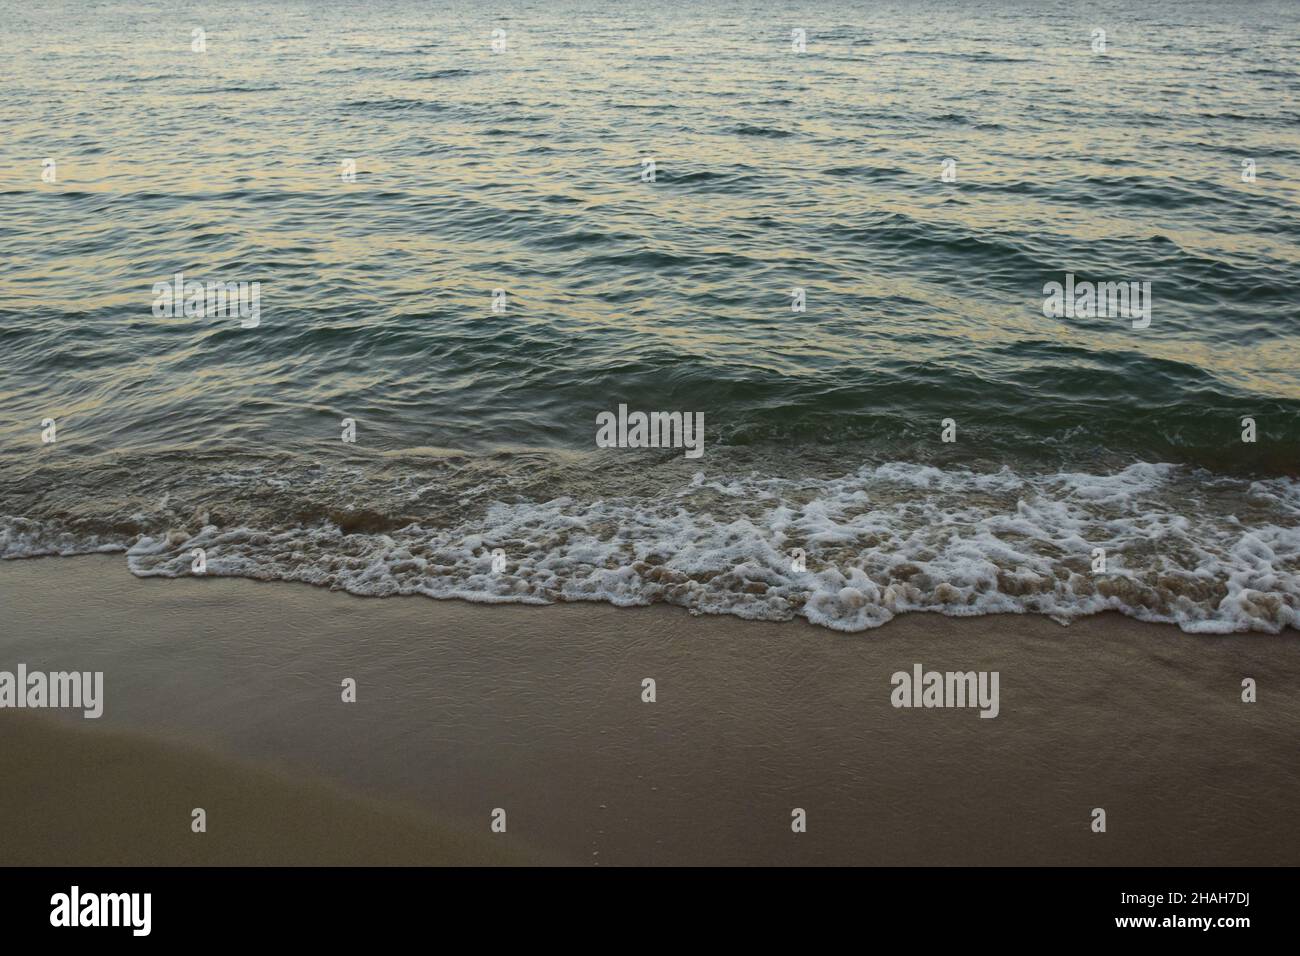 Le onde di mare schiumose rotolano sulla spiaggia di sabbia diurna Foto Stock